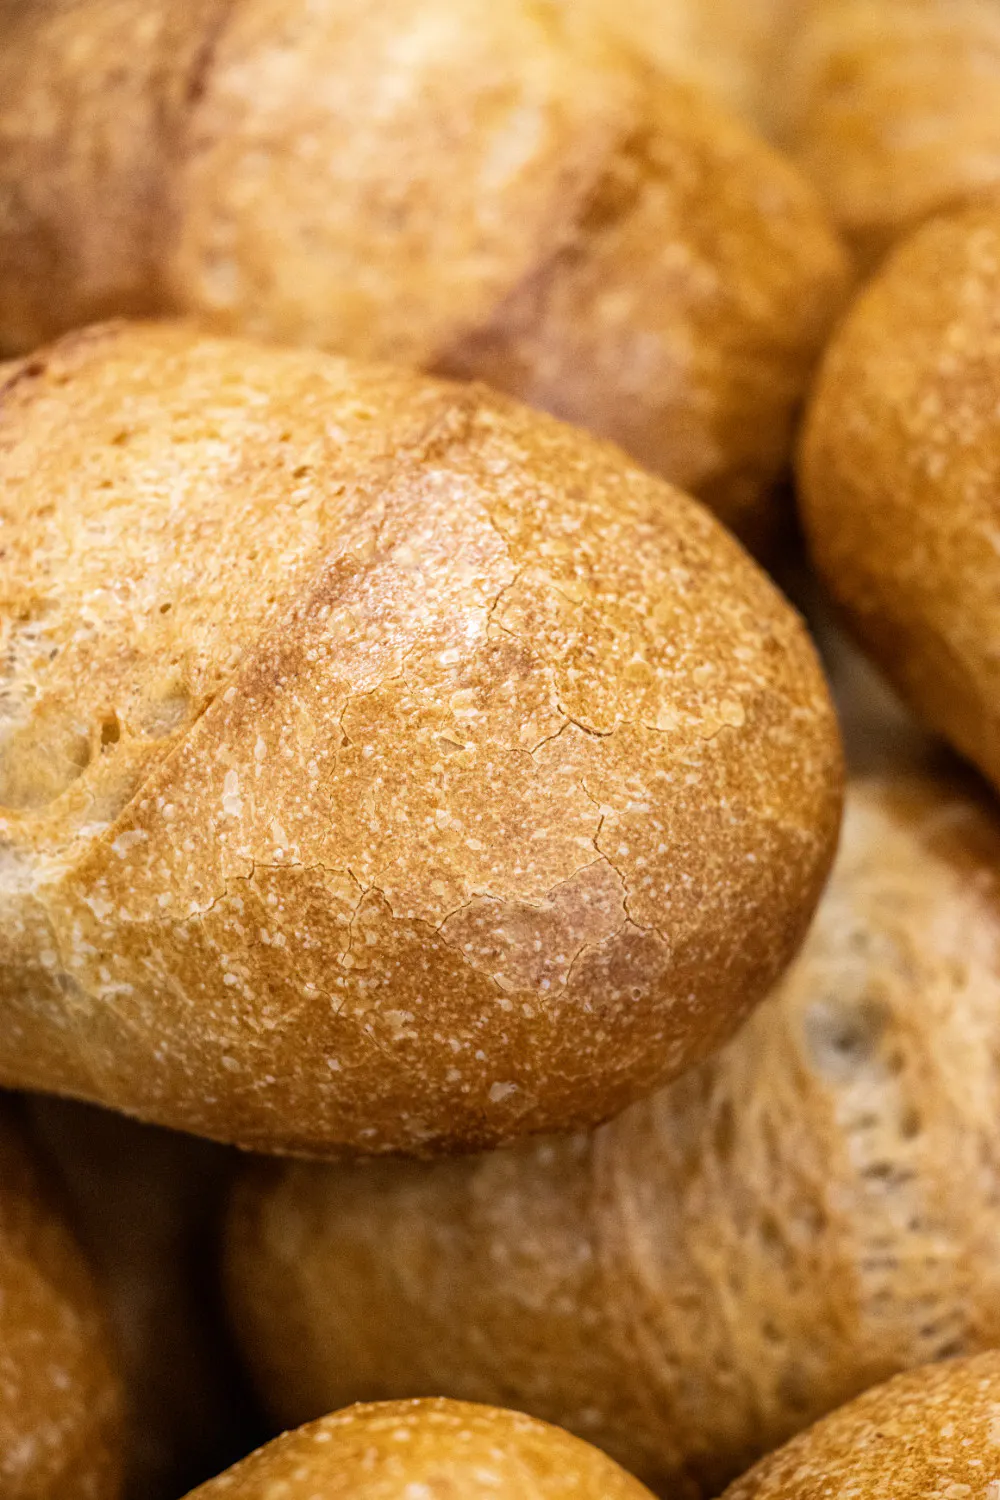 Ob sich die Kruste beim Einfrieren von Brötchen oder Brot von der Krume trennt, hängt von vielen Faktoren ab. Die wichtigsten lassen sich zu Hause oder in der Bäckerei ziemlich einfach beeinflussen.